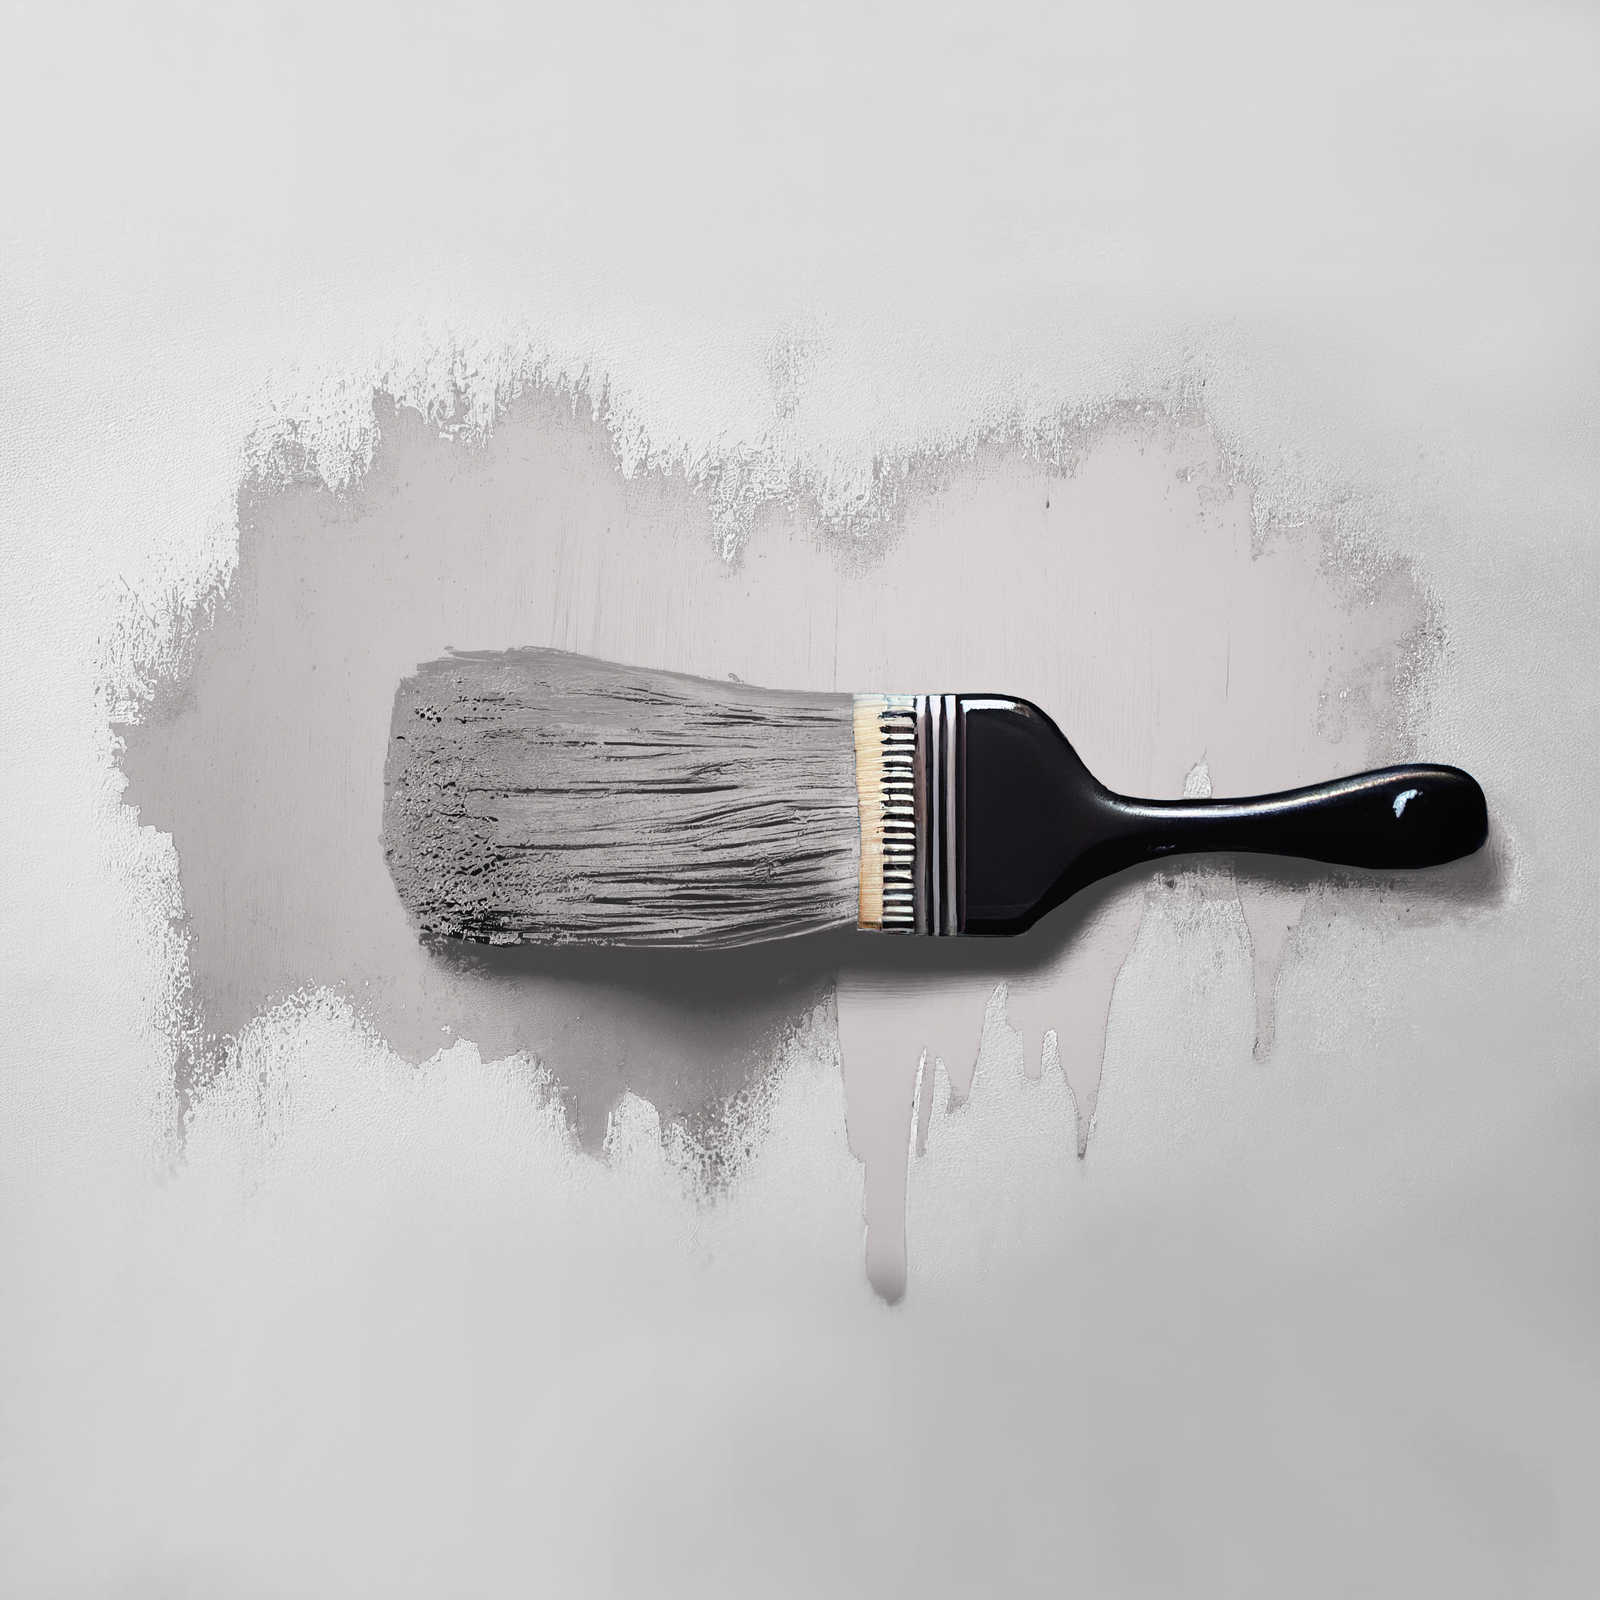             Pittura murale TCK2000 »Calm Clam« in grigio casalingo – 5,0 litri
        